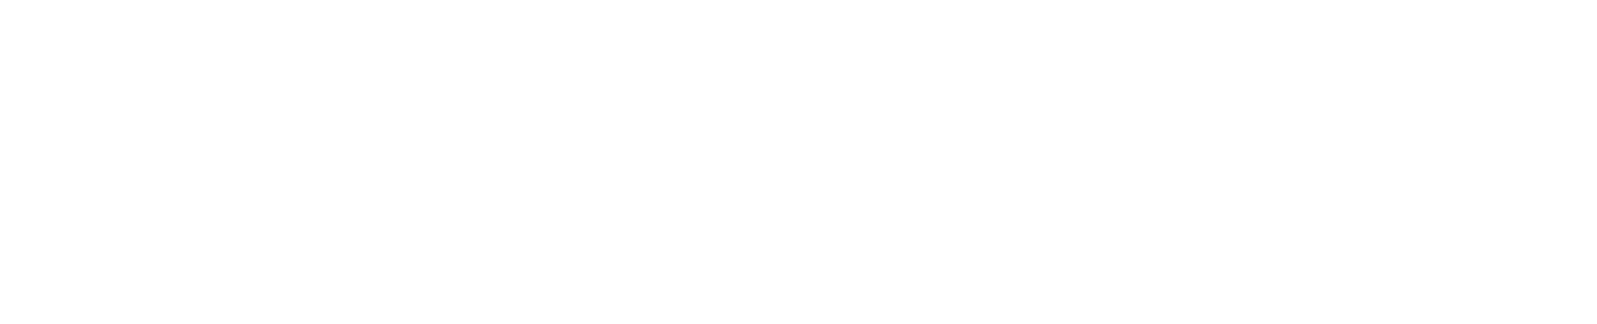 Winpak logo grand pour les fonds sombres (PNG transparent)